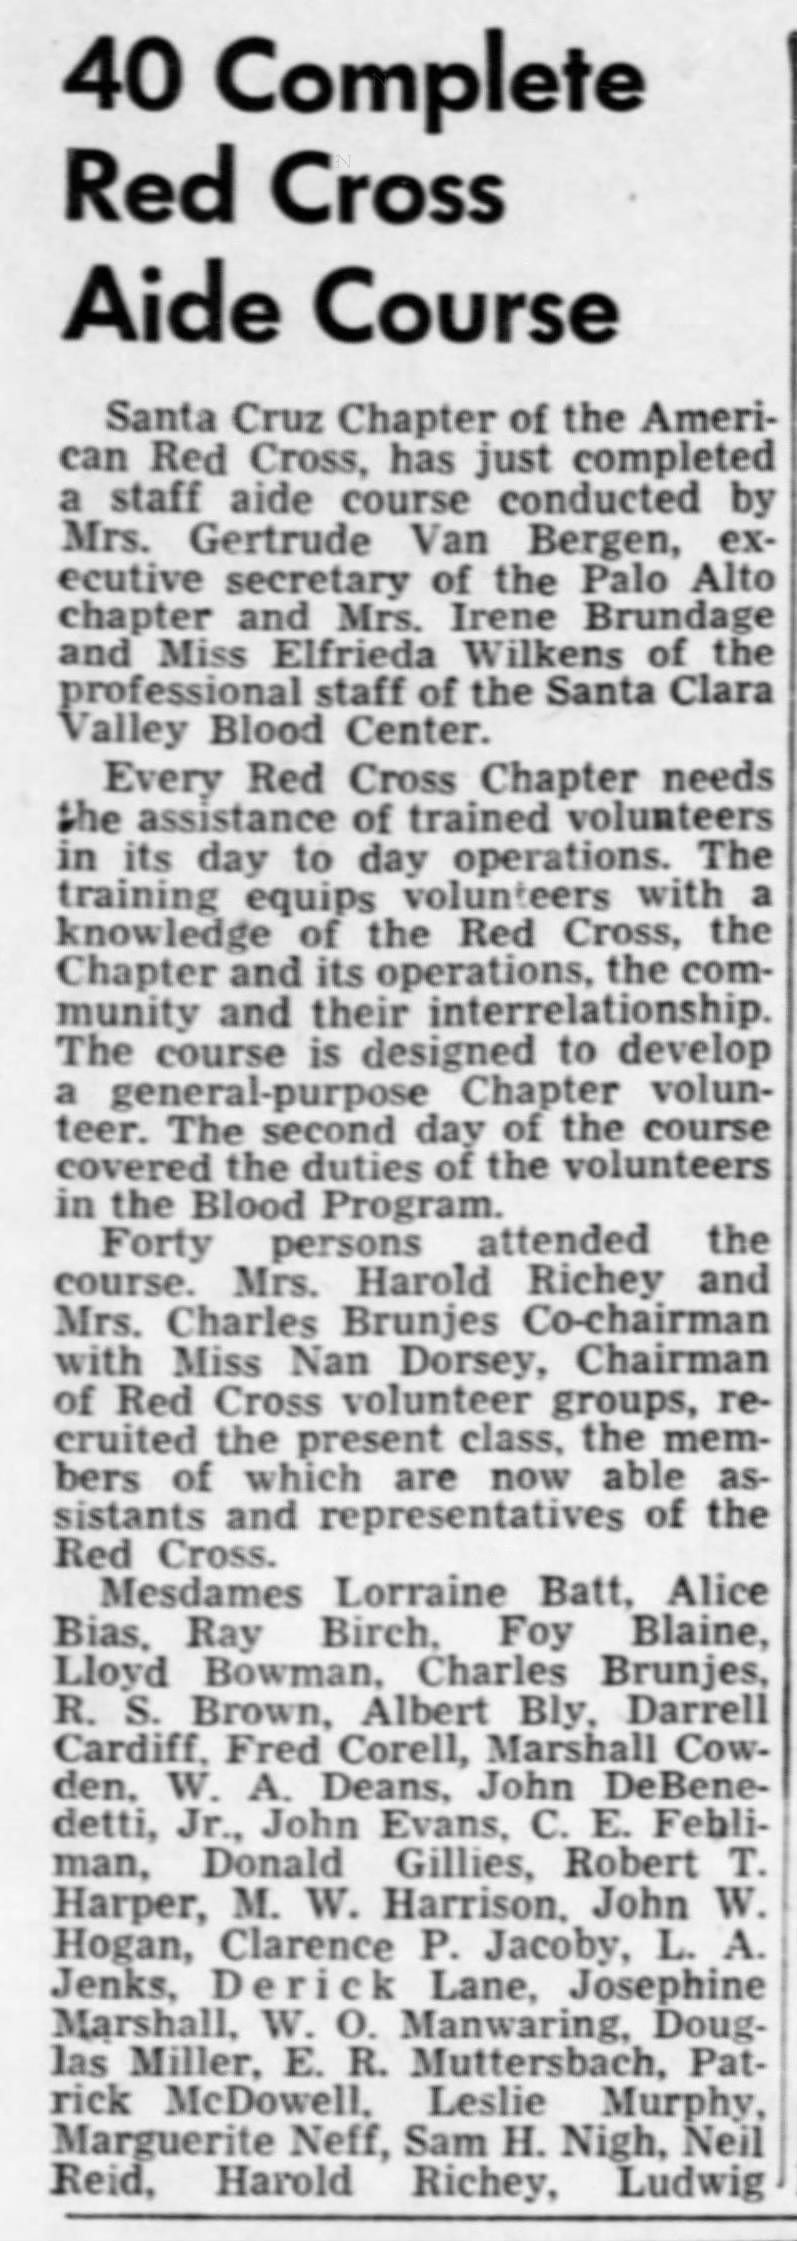 Gertrude teaching volunteer Red Cross Aides in Santa Cruz
Santa Cruz Sentinel
2 Oct 1952
Page 11